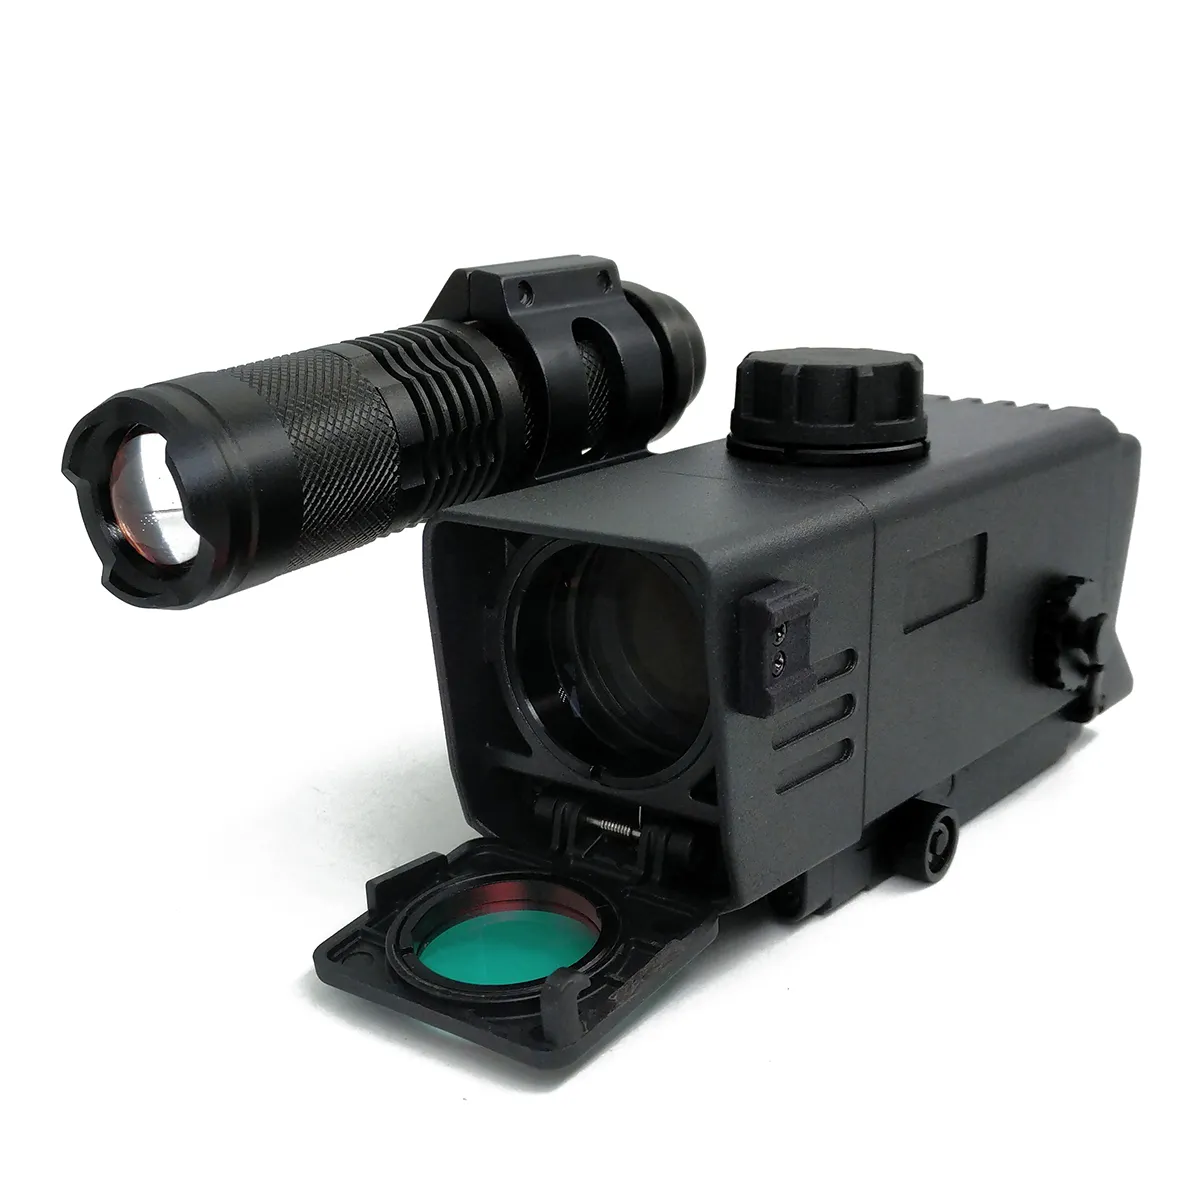 Cannocchiale per visione notturna digitale con illuminatore IR ingrandimento 3.5x mirino a punto rosso ad alta risoluzione per la caccia